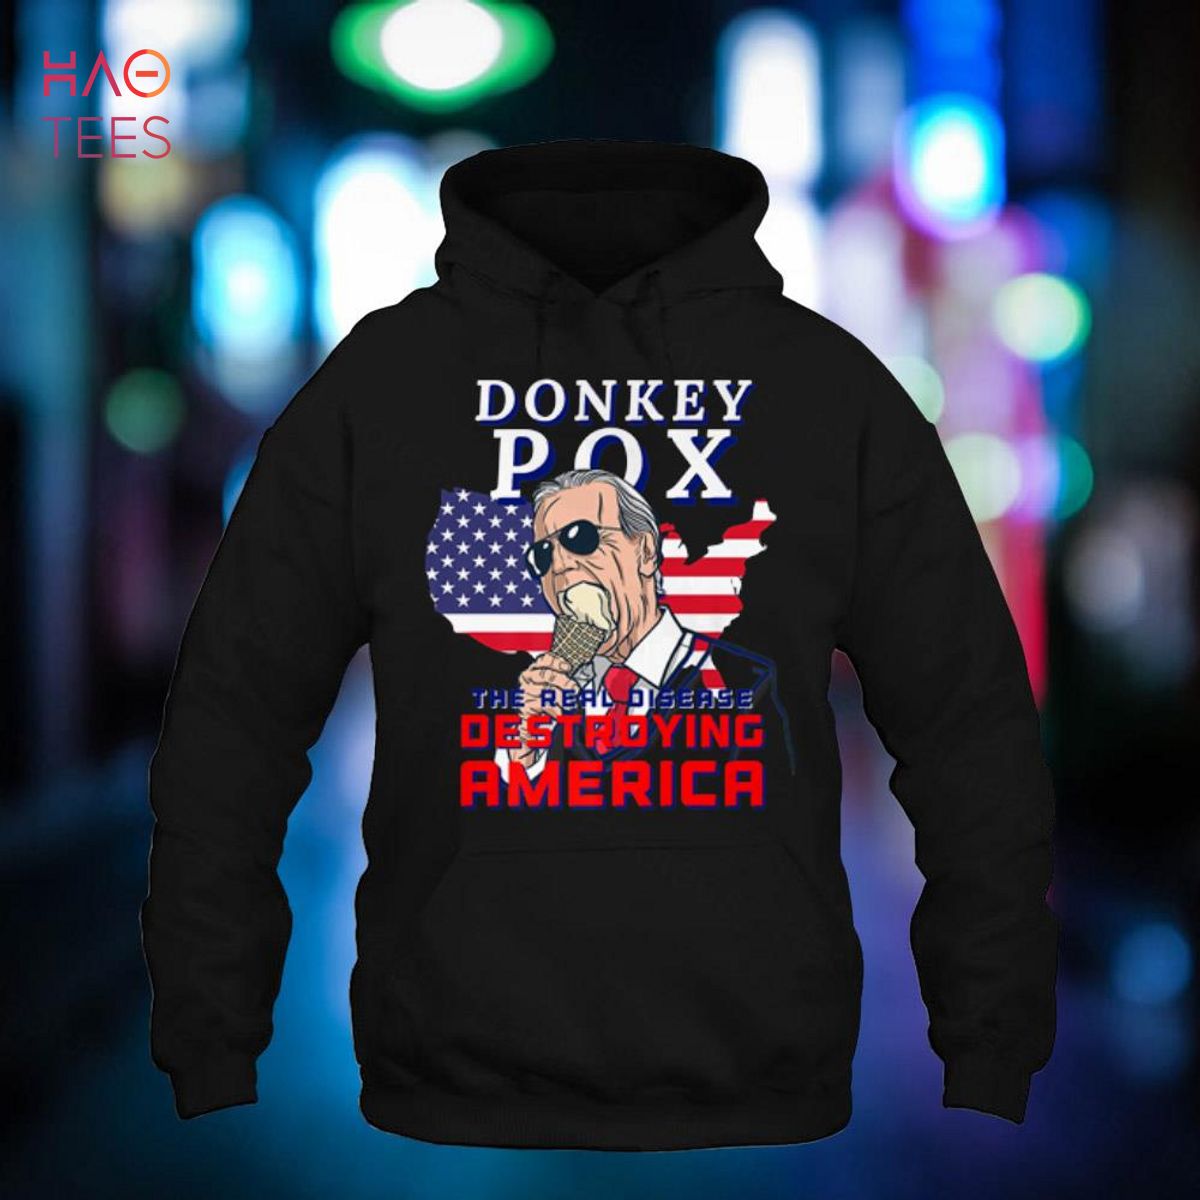 Donkey Pox Great MAGA King Trump UltrA MAGA US Independence Shirt